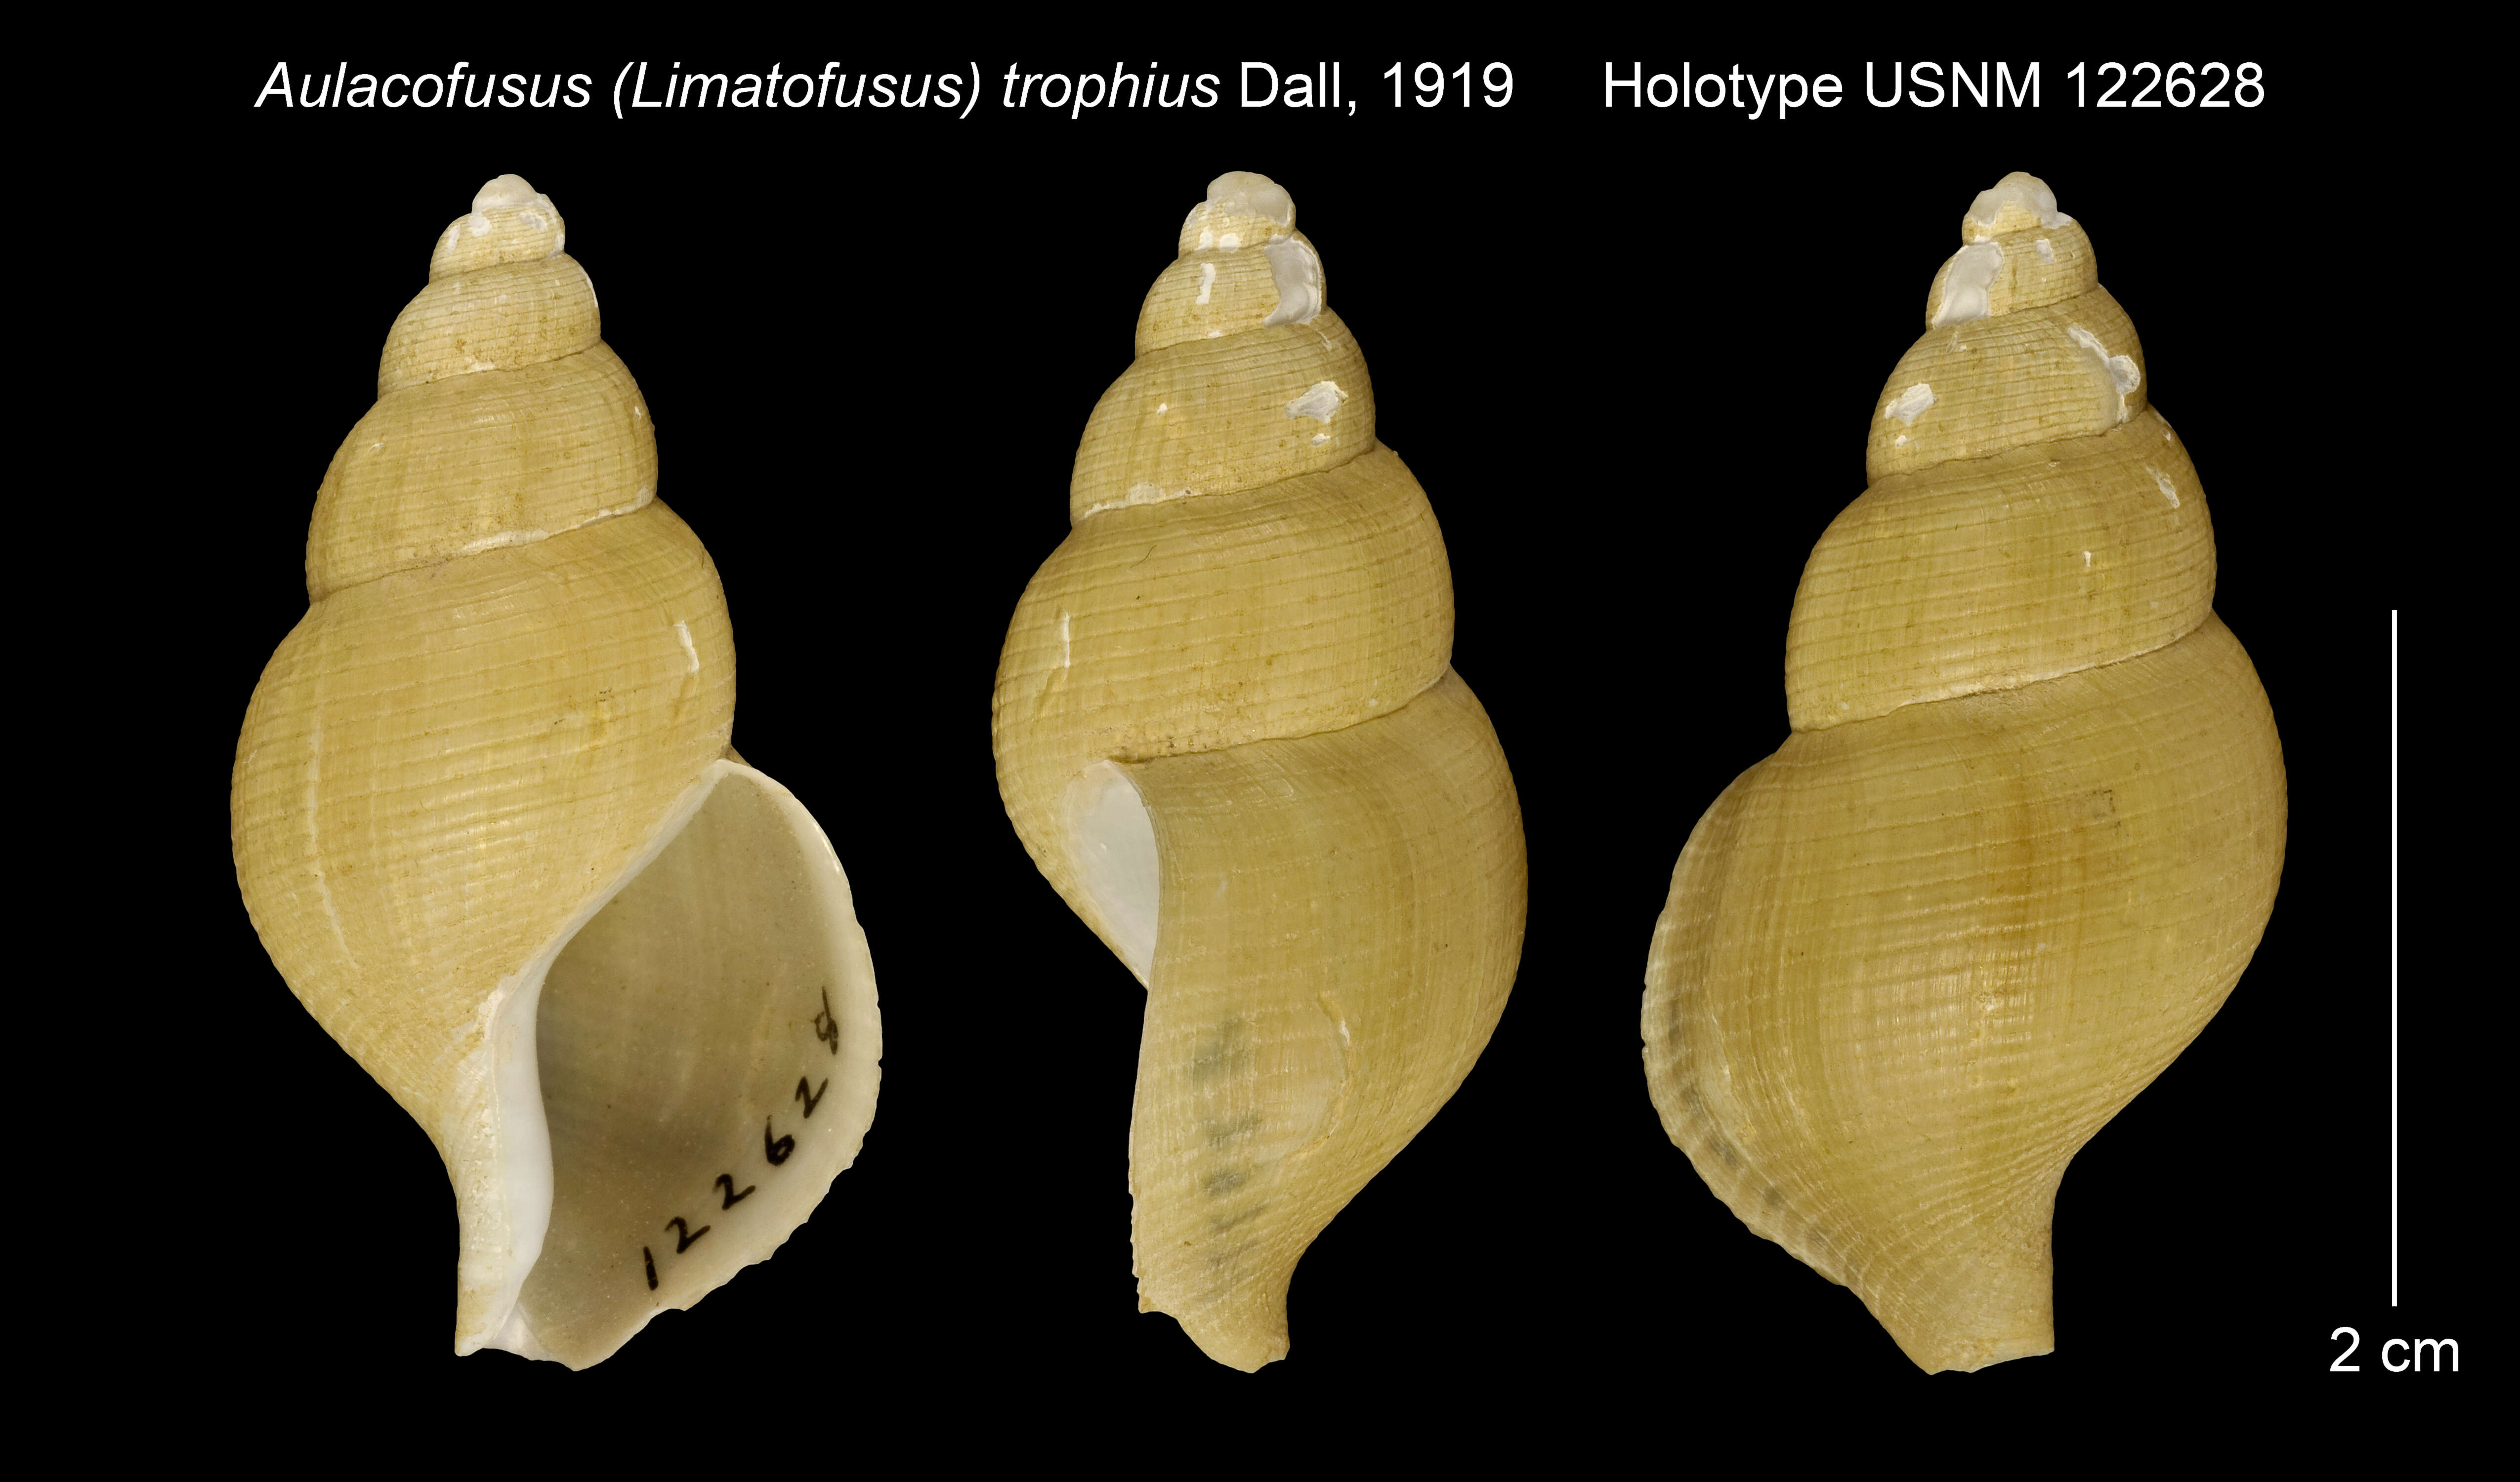 Image of Aulacofusus trophius Dall 1919